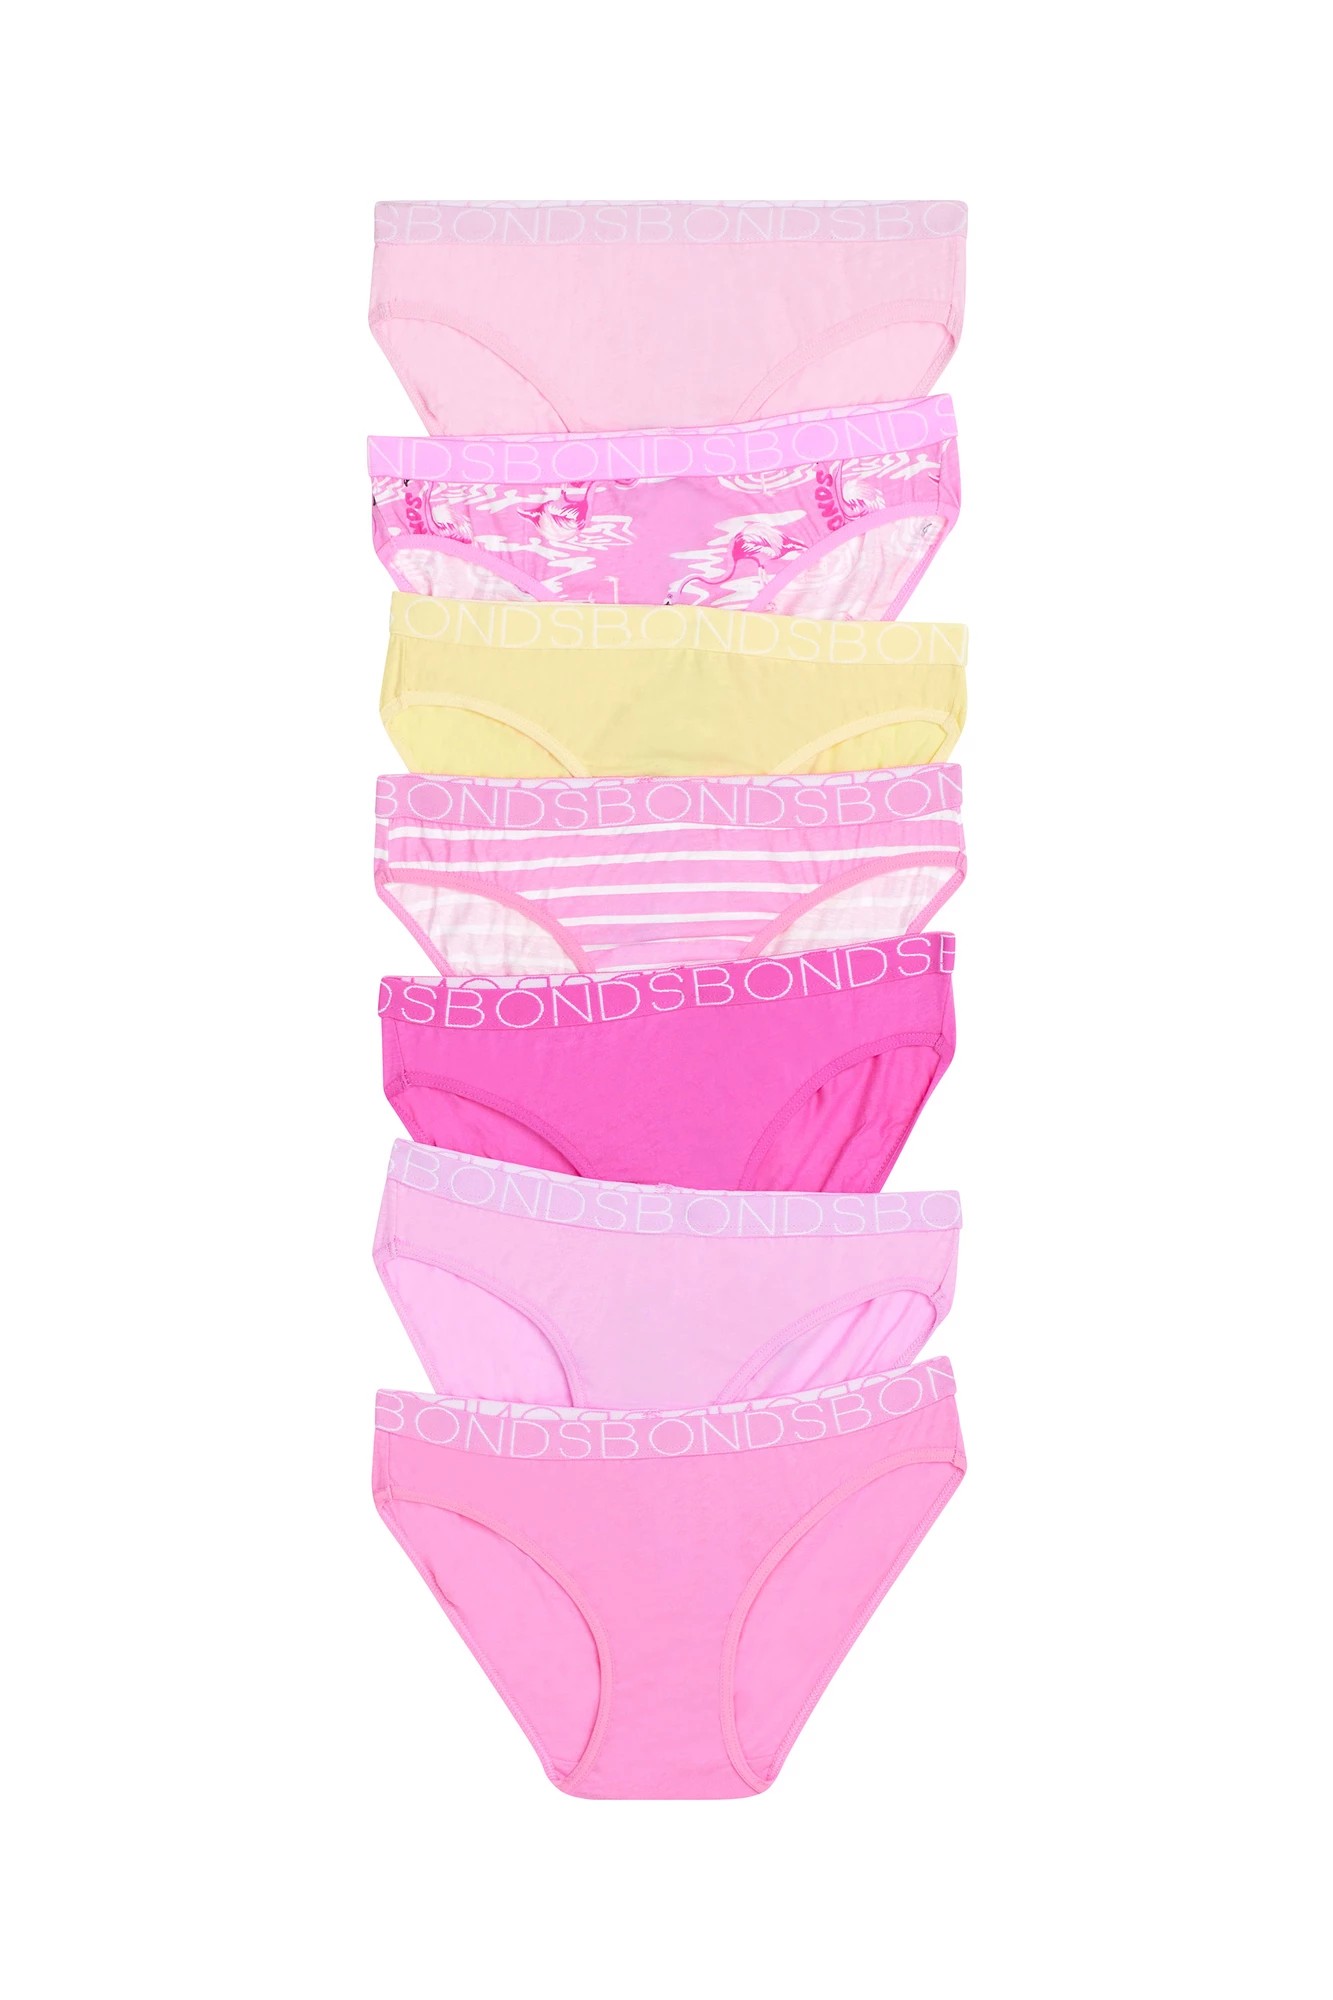 Buy Bonds Girls Underwear Briefs Shorties Pink Everyday Kids